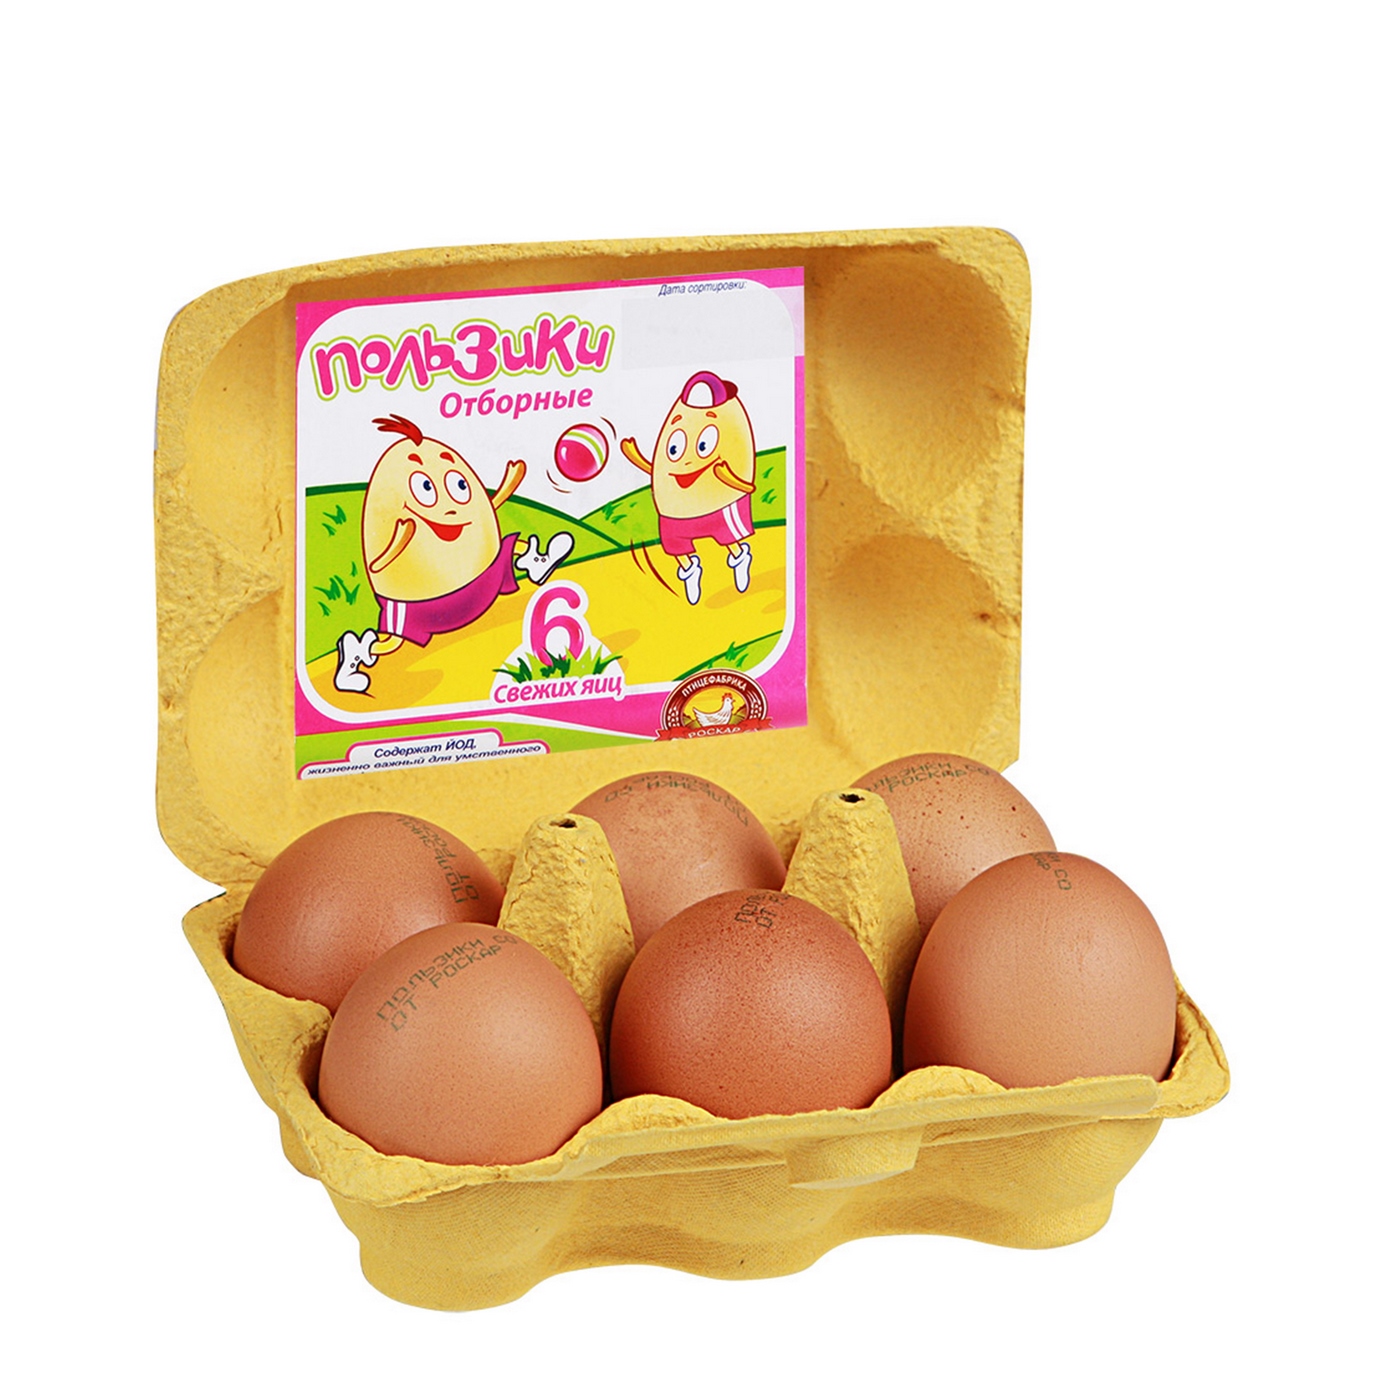 Купить яйцо киров. Яйца пользики. Упаковка для яиц. Яйца куриные в упаковке. Упаковка для яиц 6 штук.